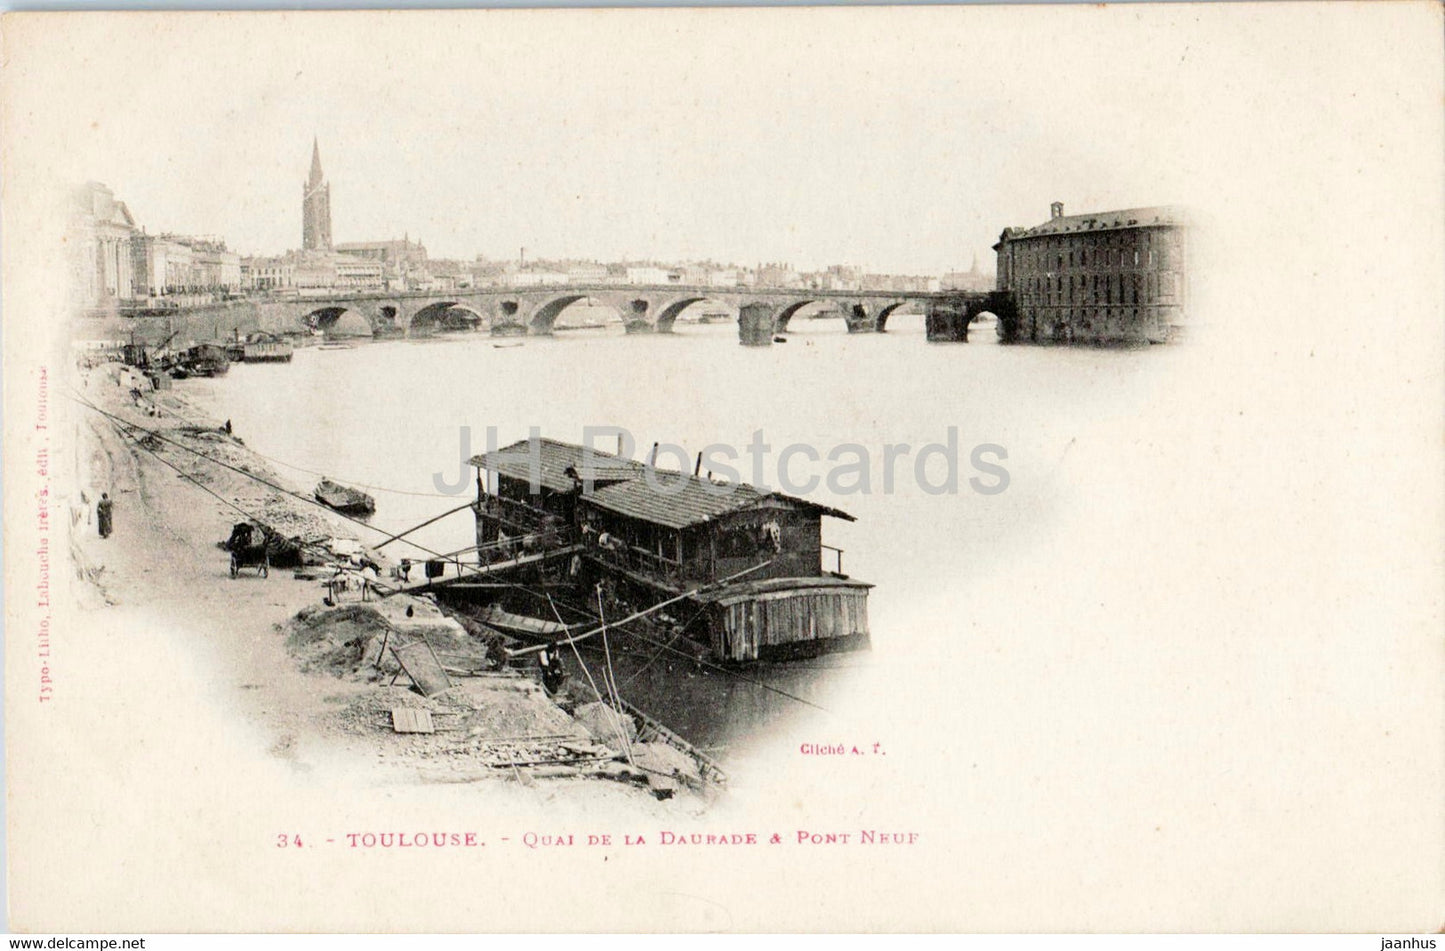 Toulouse - Quai de La Daurade & Pont Neuf - bridge - 34 - old postcard - France - unused - JH Postcards